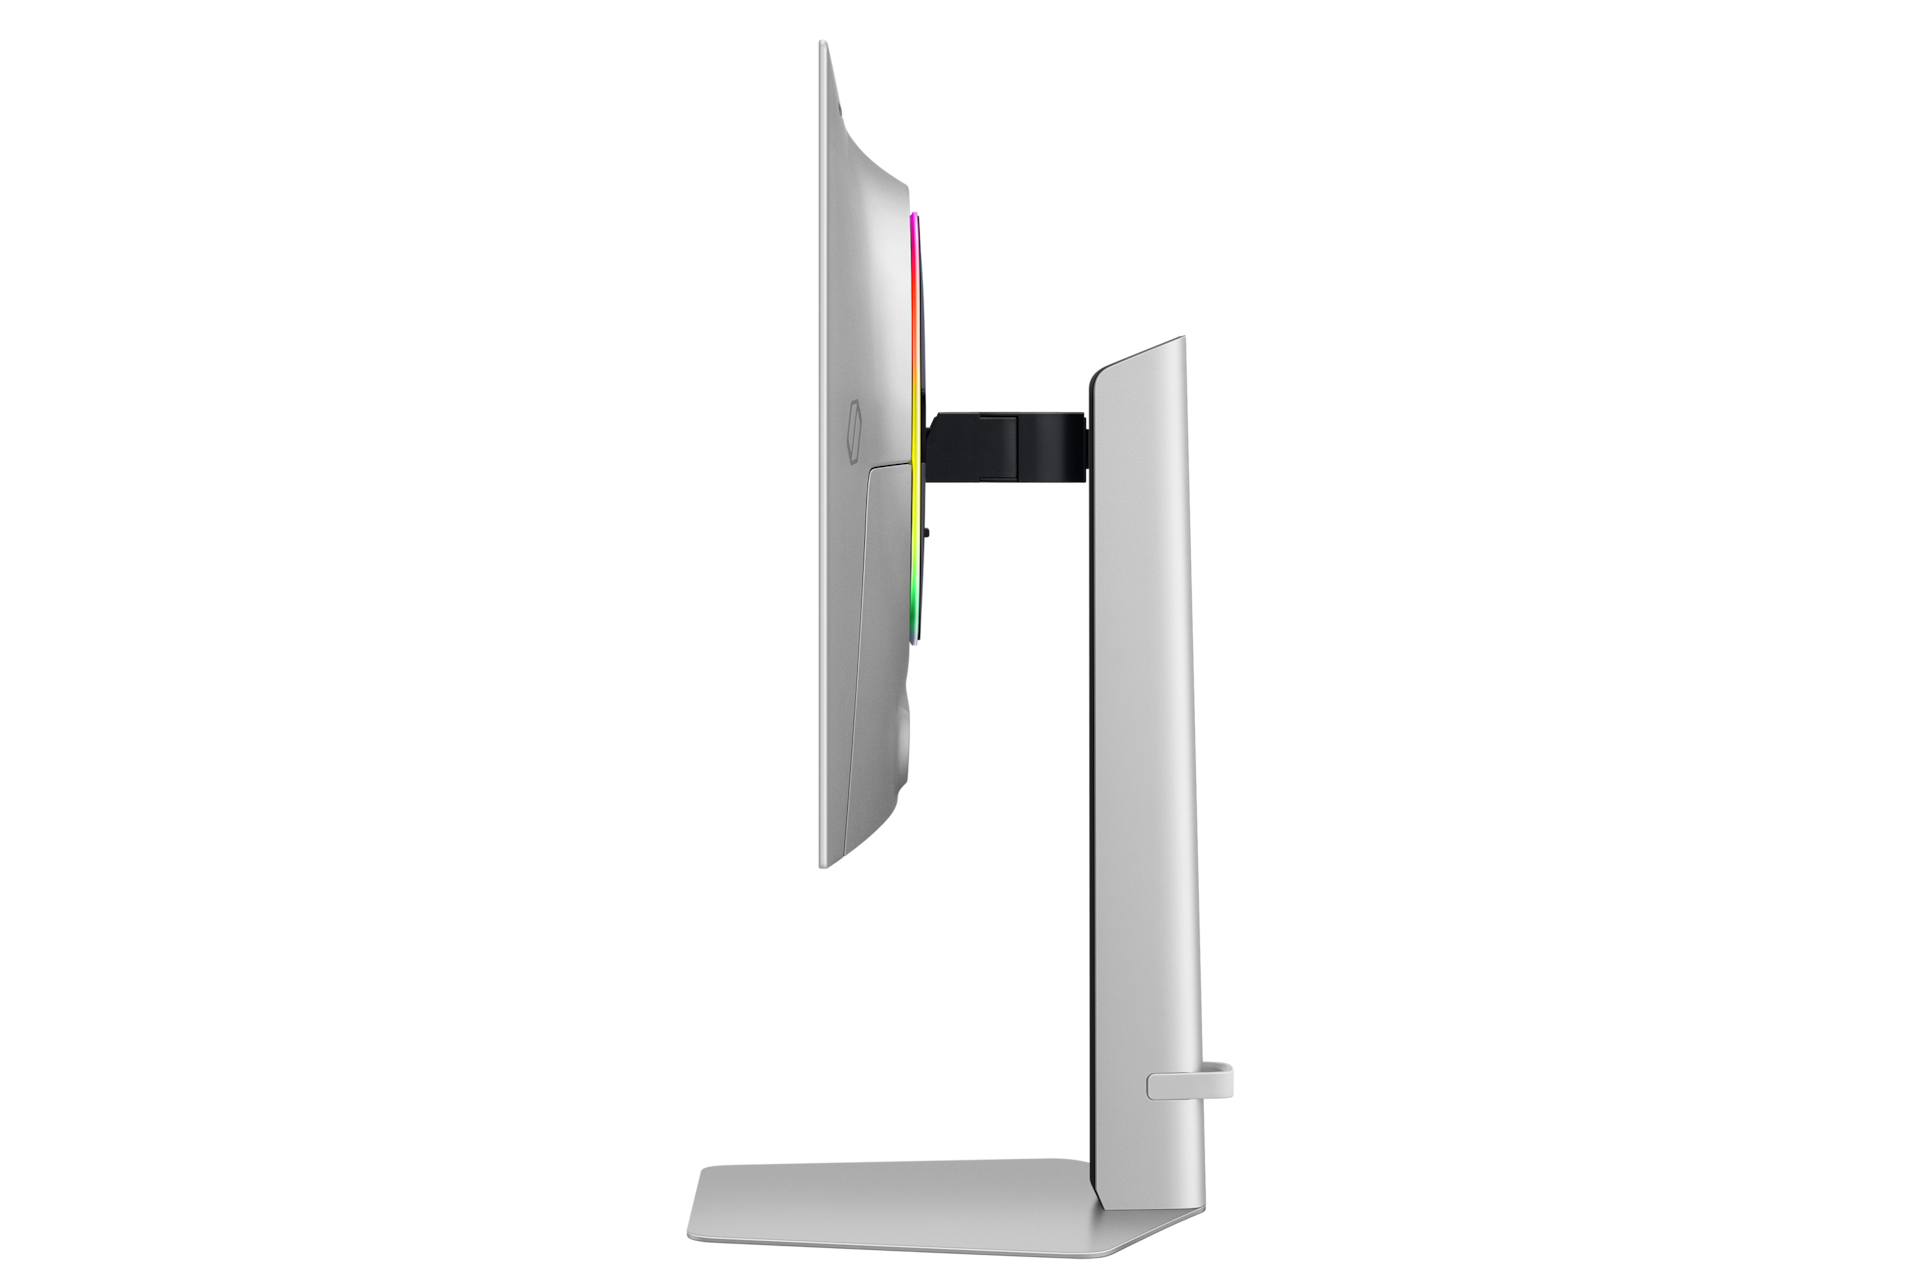 오디세이 OLED G6(G60SD) (67.8 cm) 실버 측면